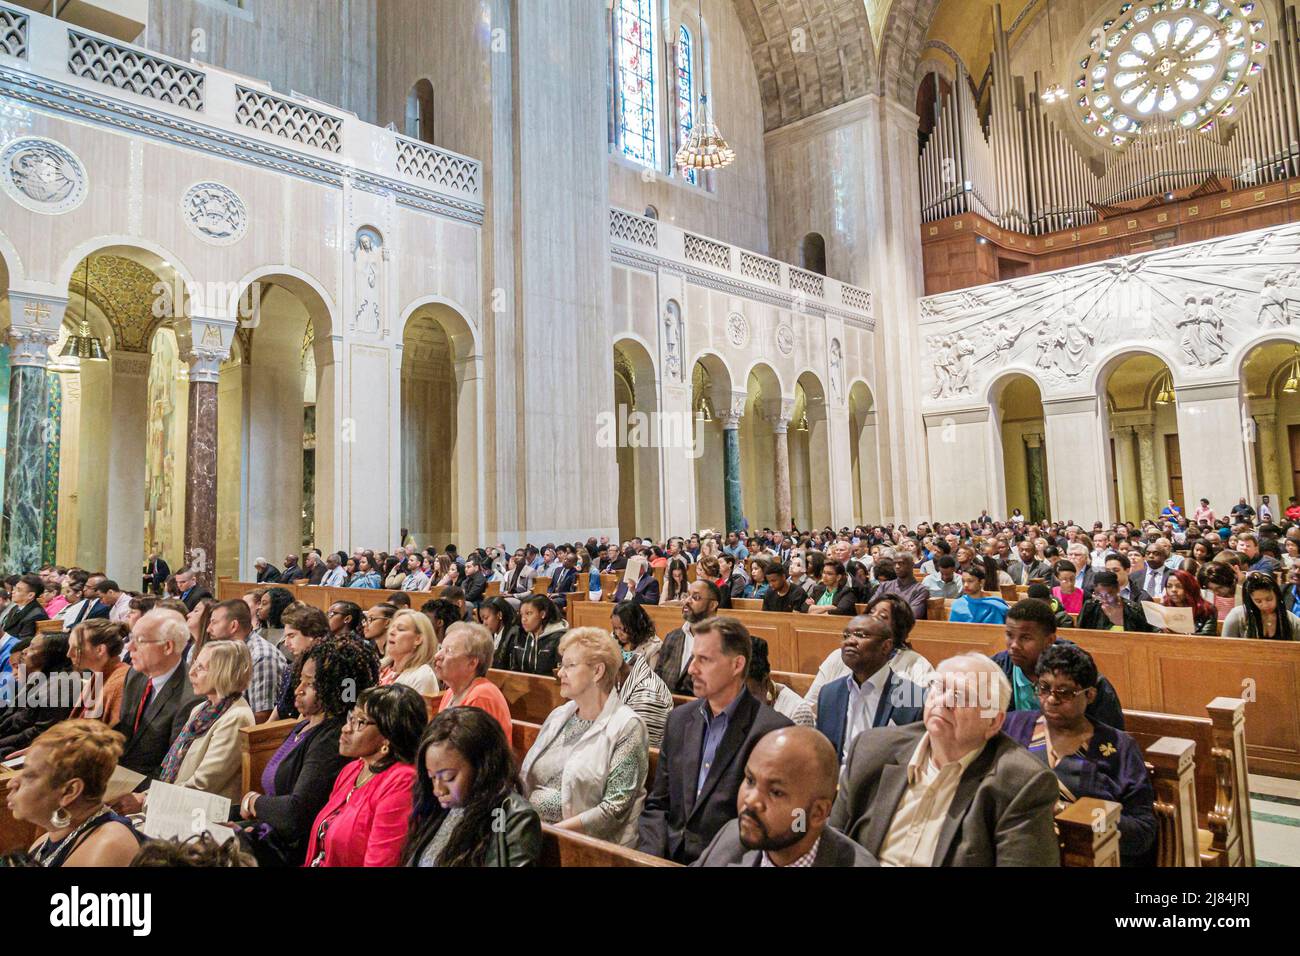 Washington DC, Basílica Santuario Nacional Inmaculada Concepción, Catedral Católica Negro, dentro de la audiencia ceremonia de graduación de la escuela secundaria invitados familias Foto de stock